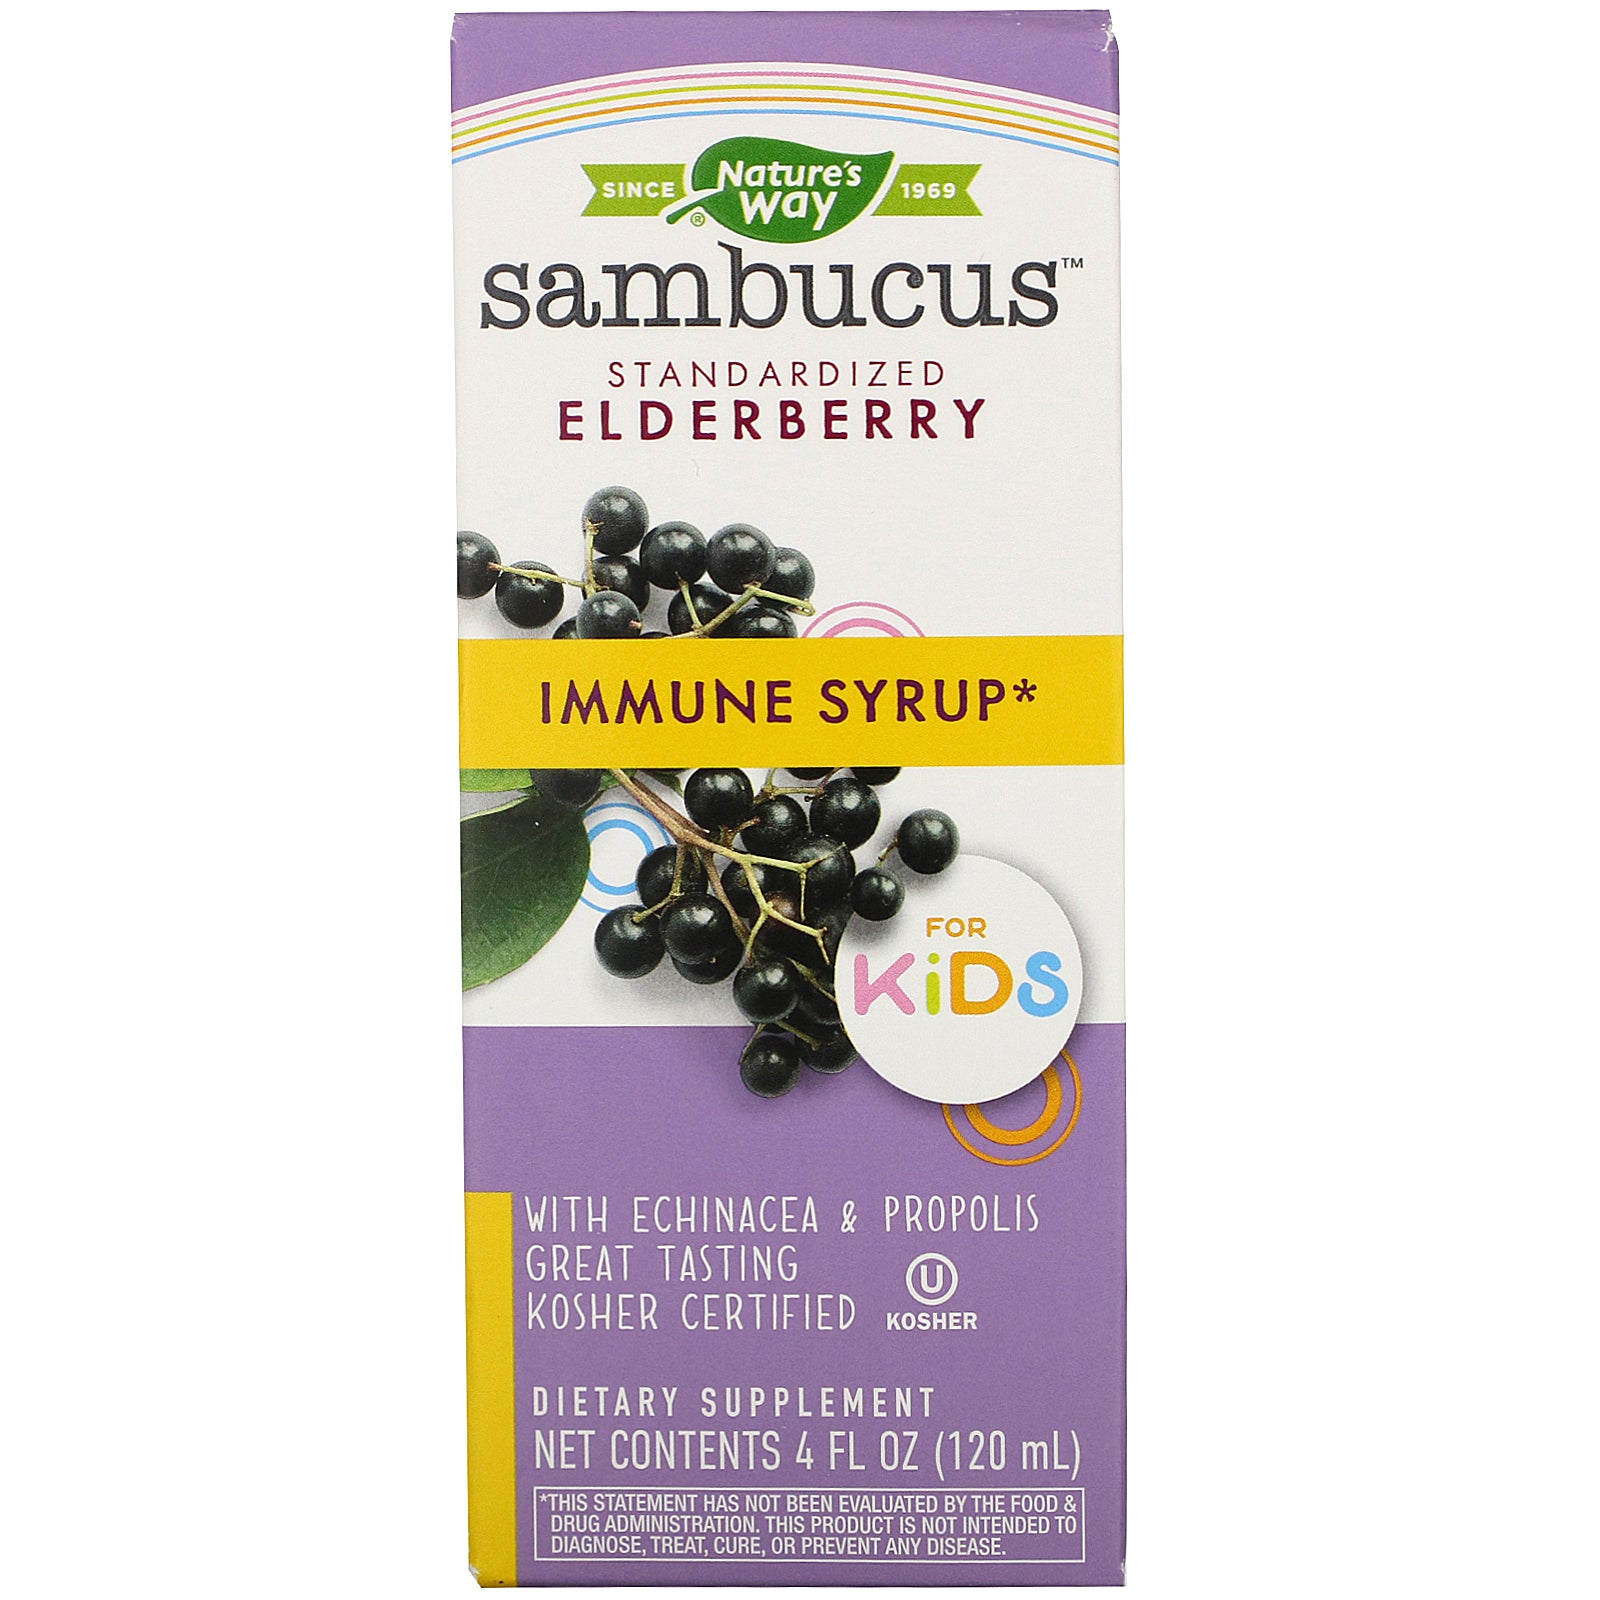 Sambucus Elderberry Immune Syrup for Kids